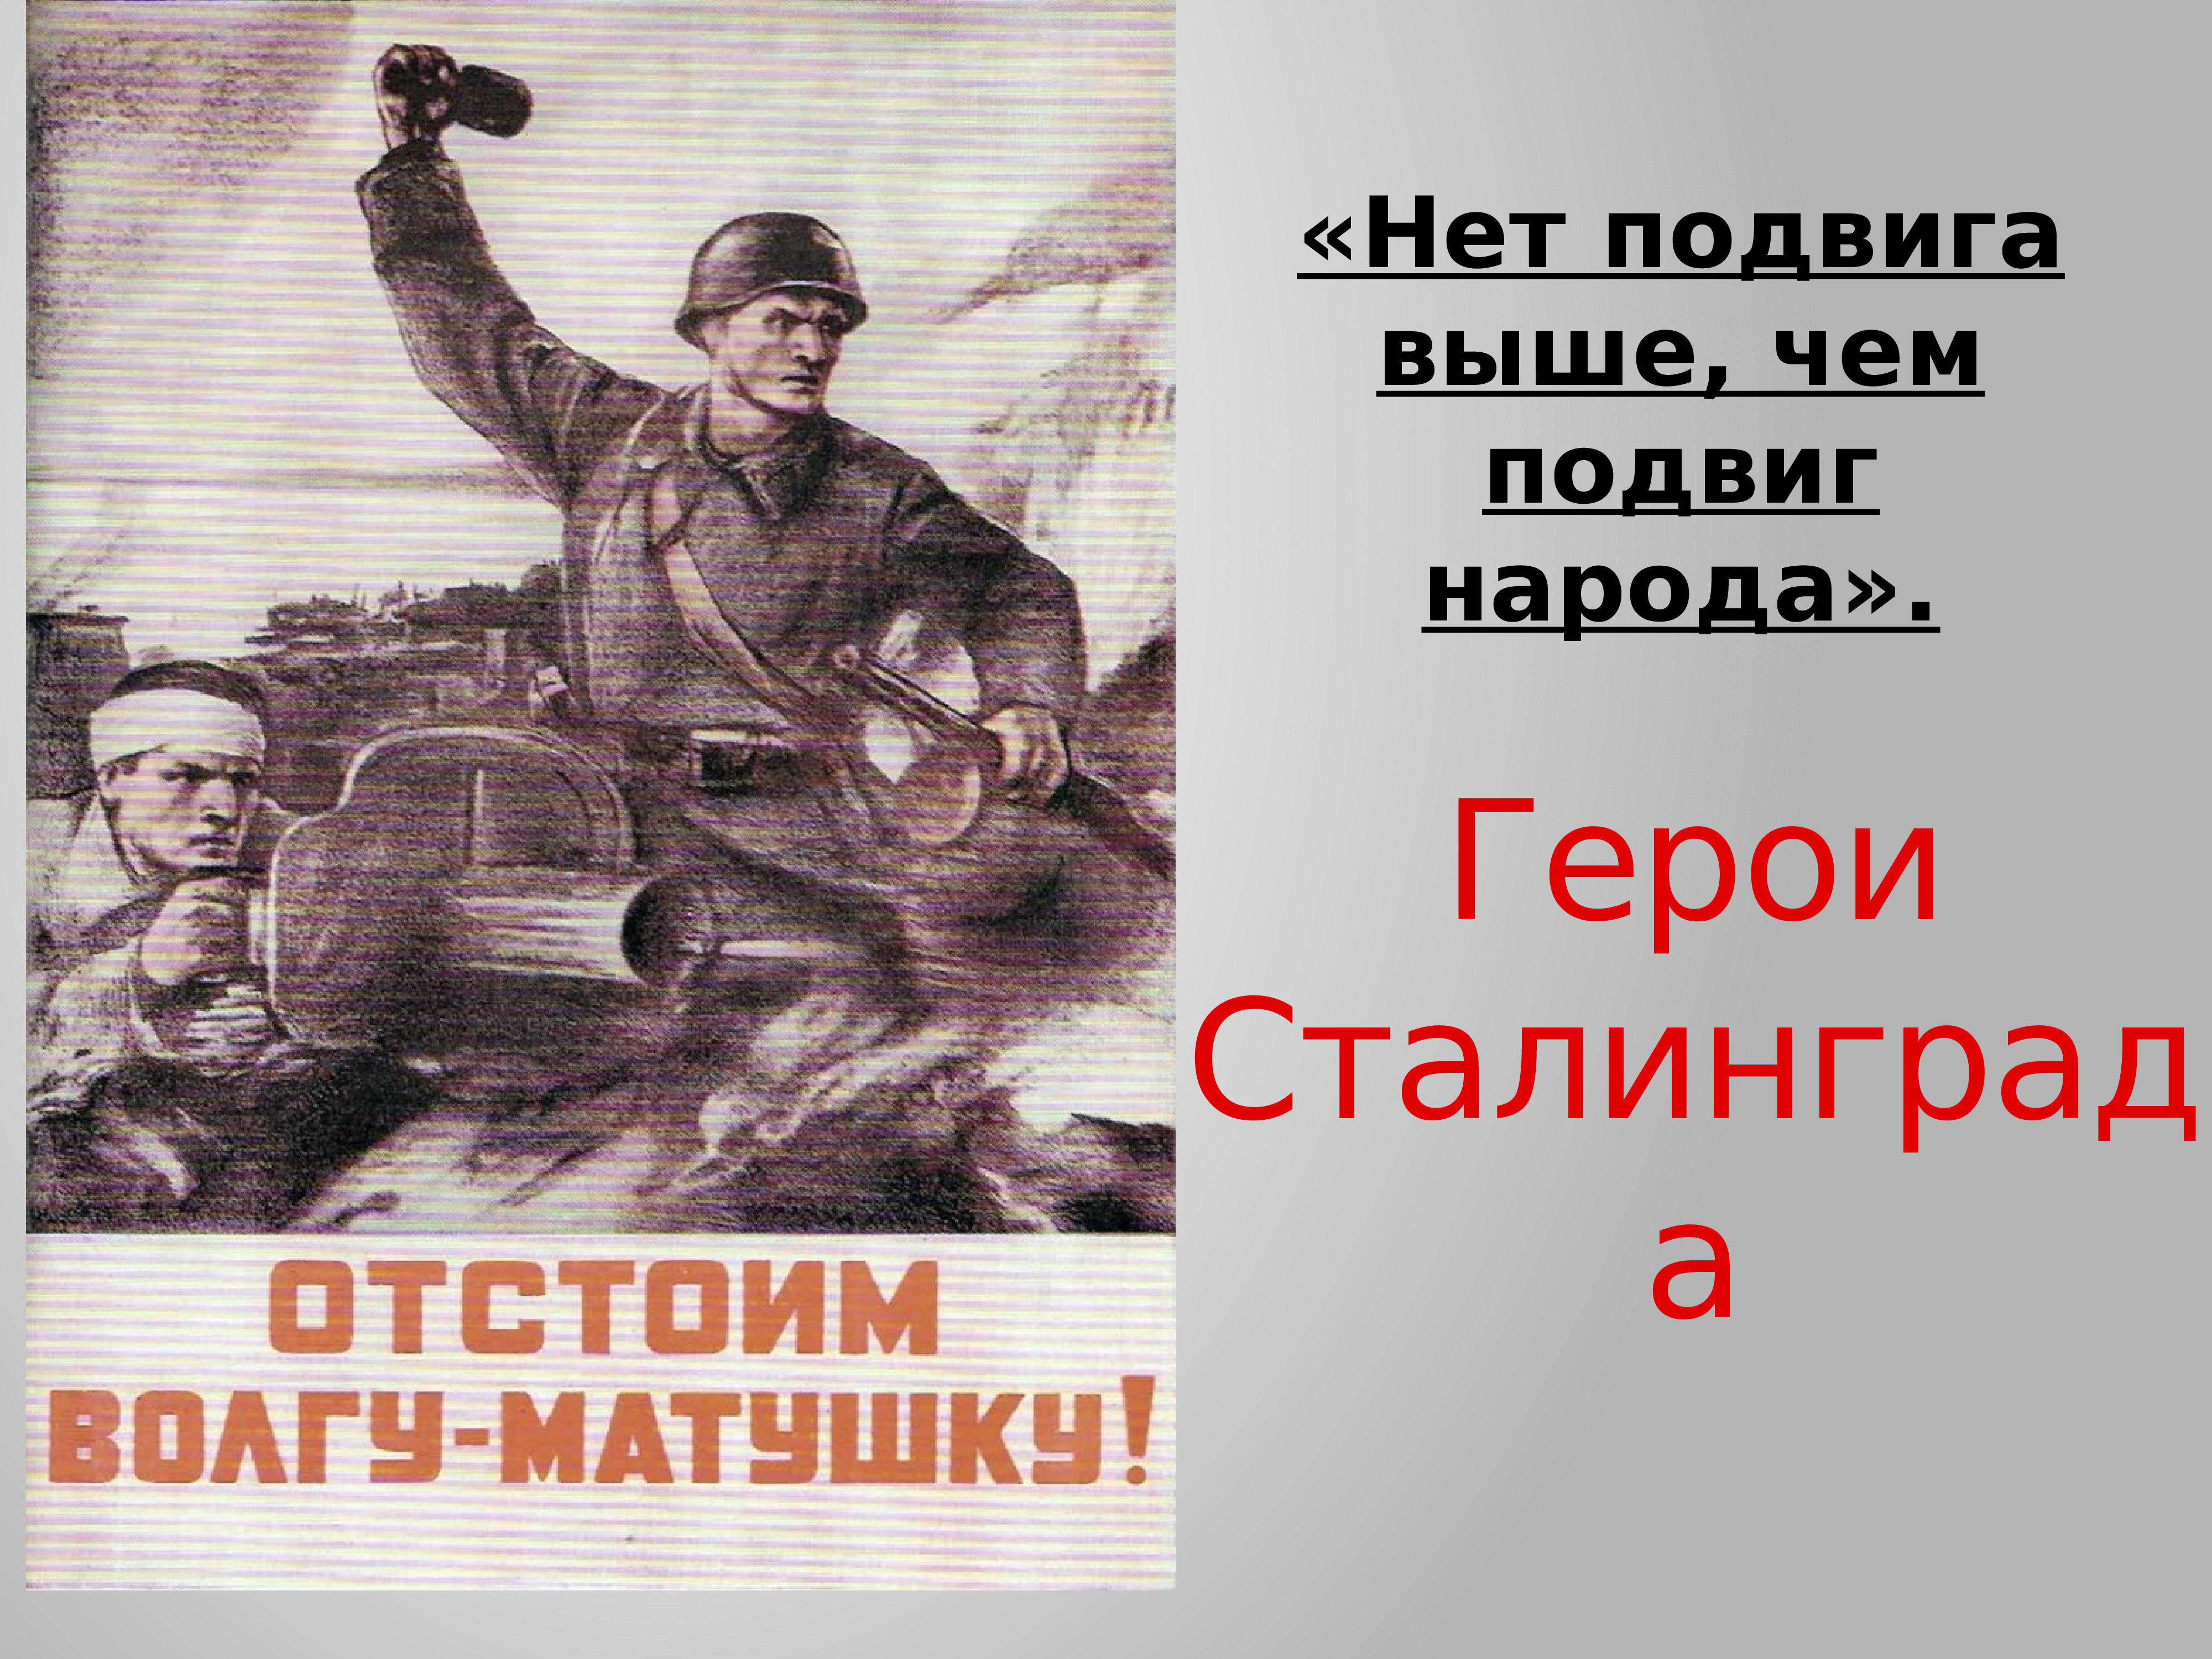 Плакат волга матушка. Отстоим Сталинград плакат. Сталинградская битва плакат. Плакат отстоим Волгу матушку. Плакаты посвященные Сталинградской битве.